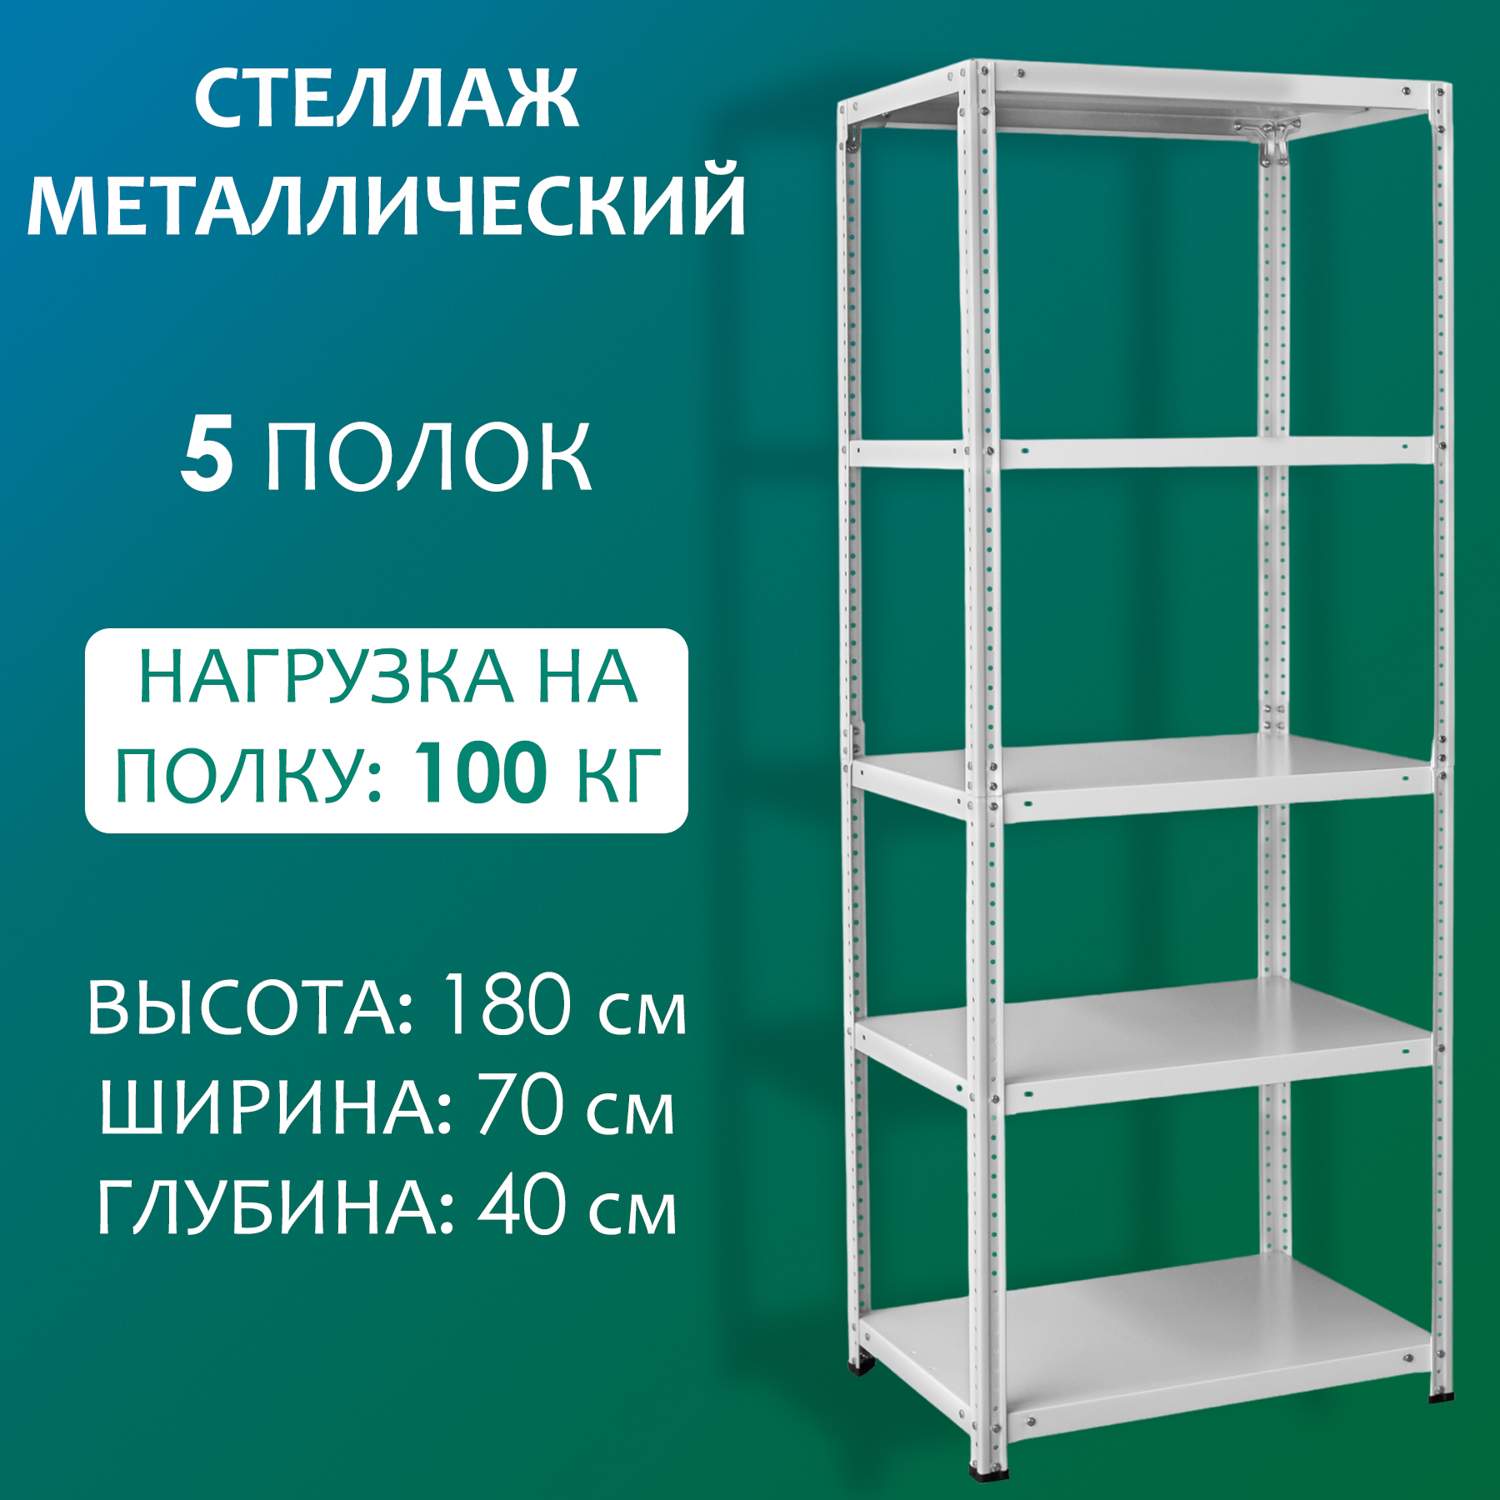 Стеллаж Стальной мир 180х70х40 см, 5 полок - купить в Москве, цены на Мегамаркет | 600012509722